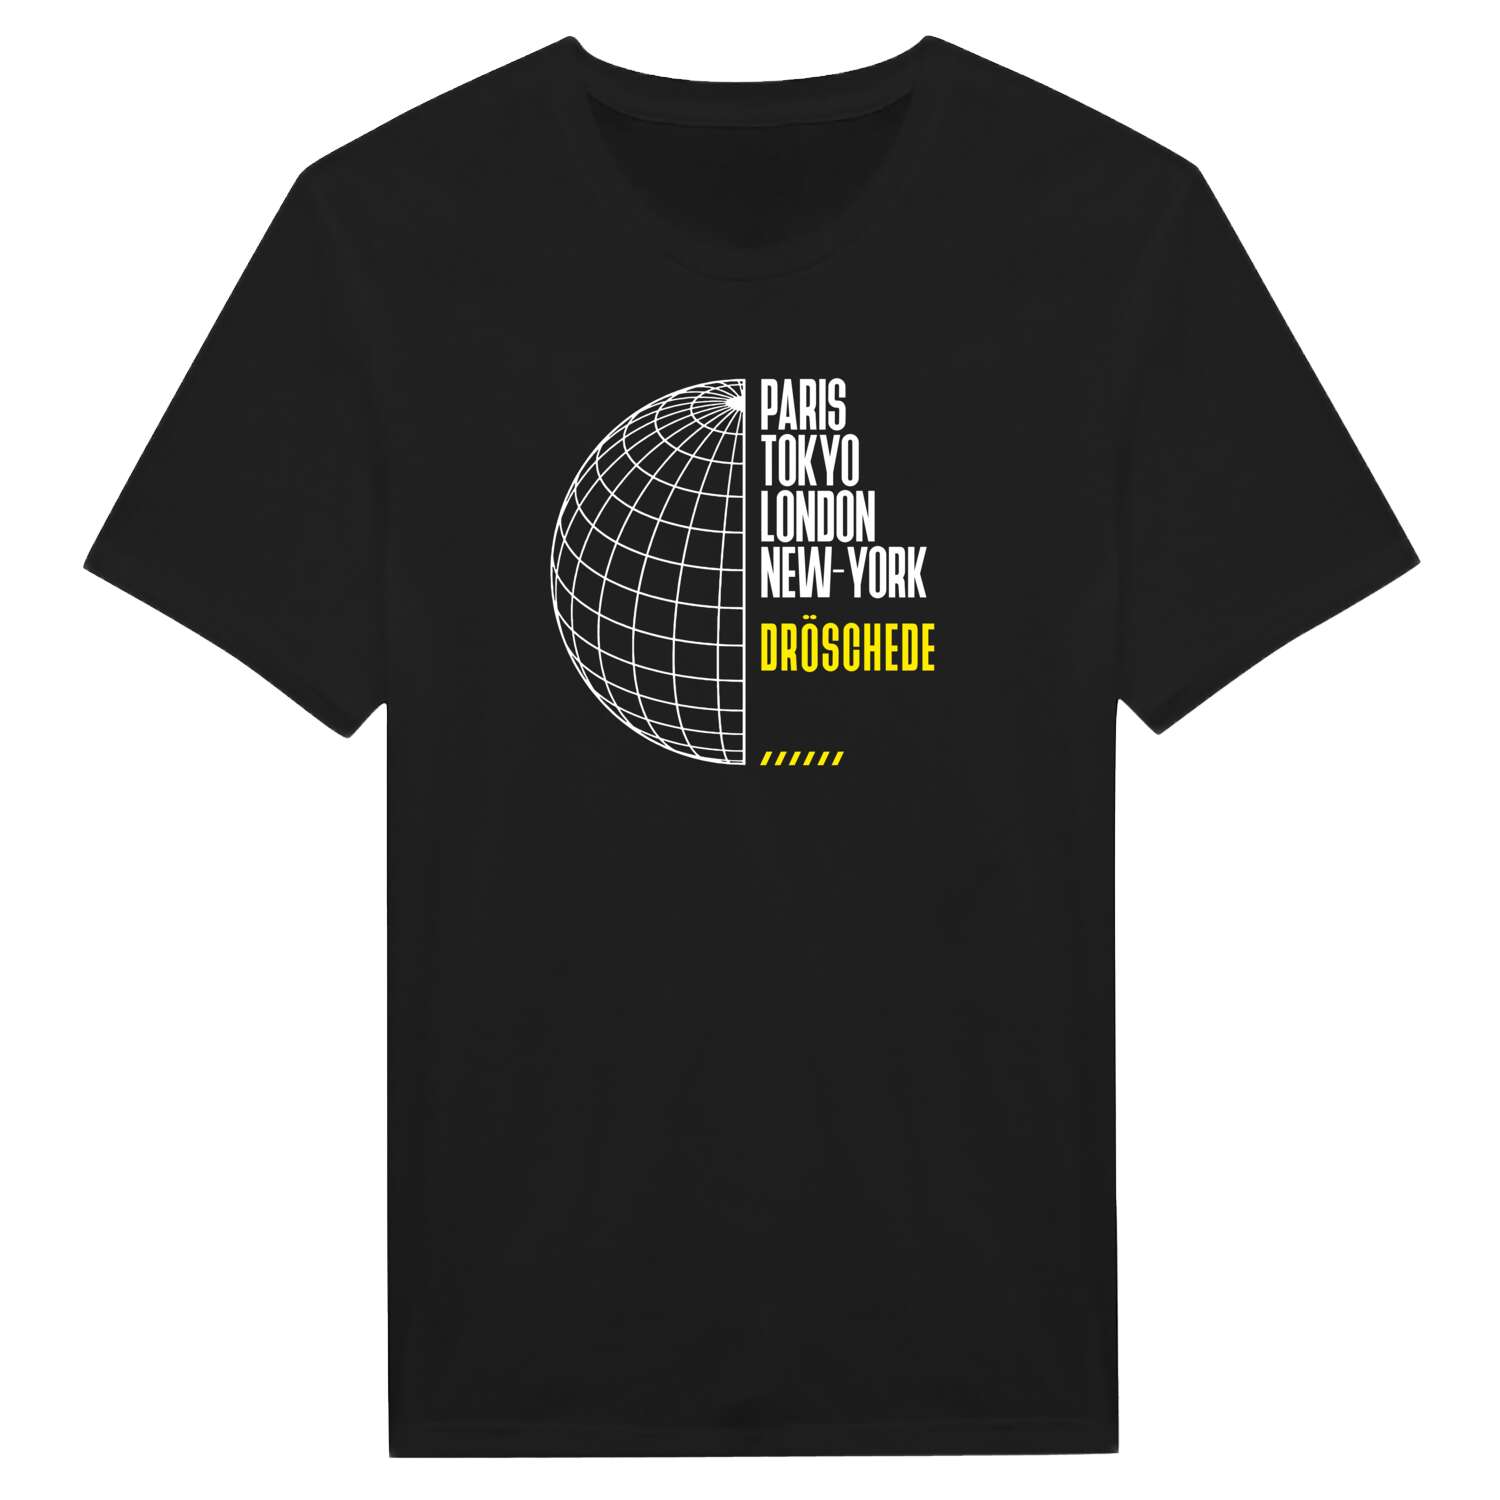 Dröschede T-Shirt »Paris Tokyo London«